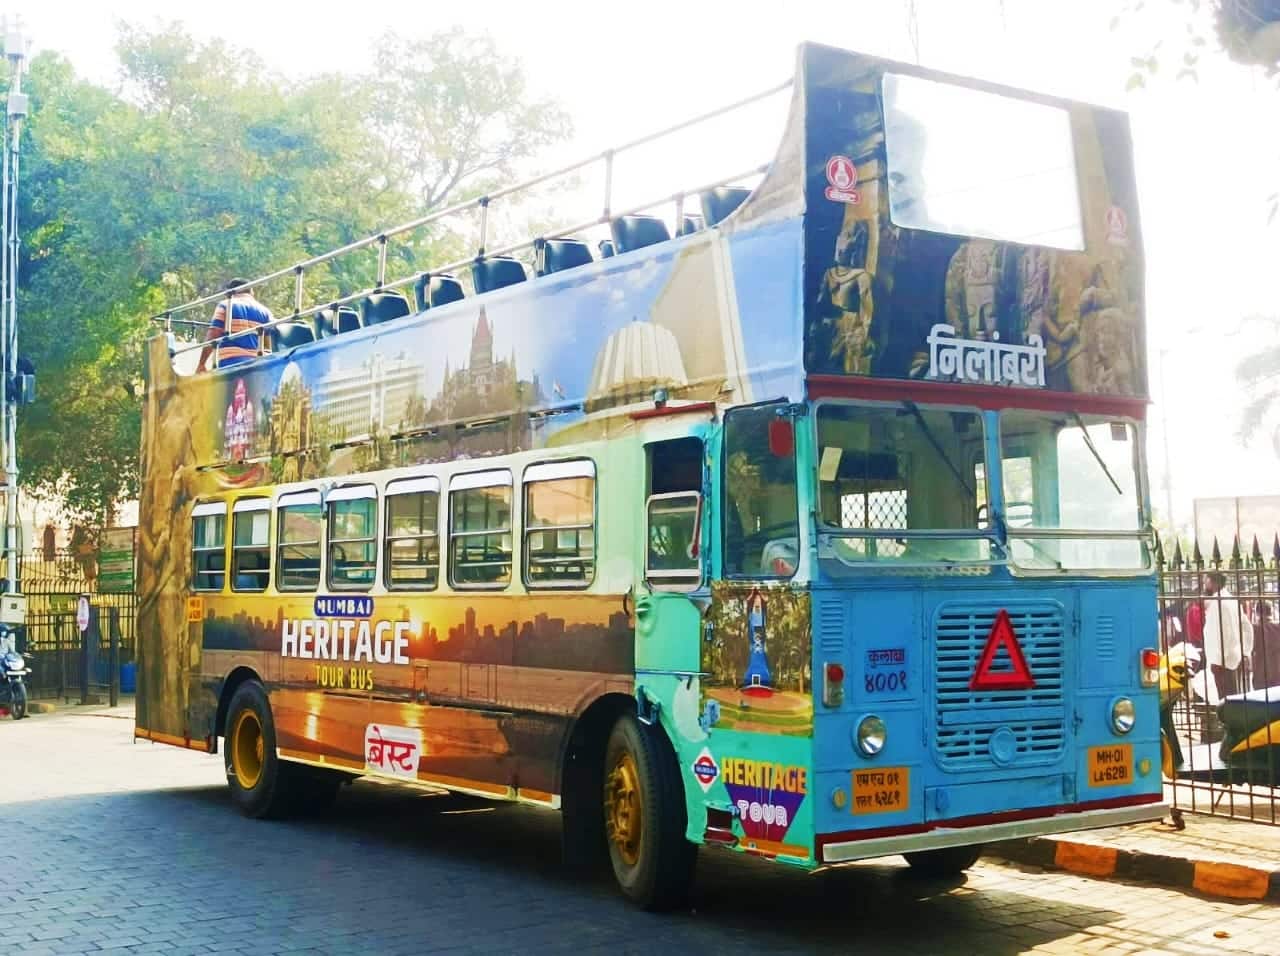 mumbai tour open bus